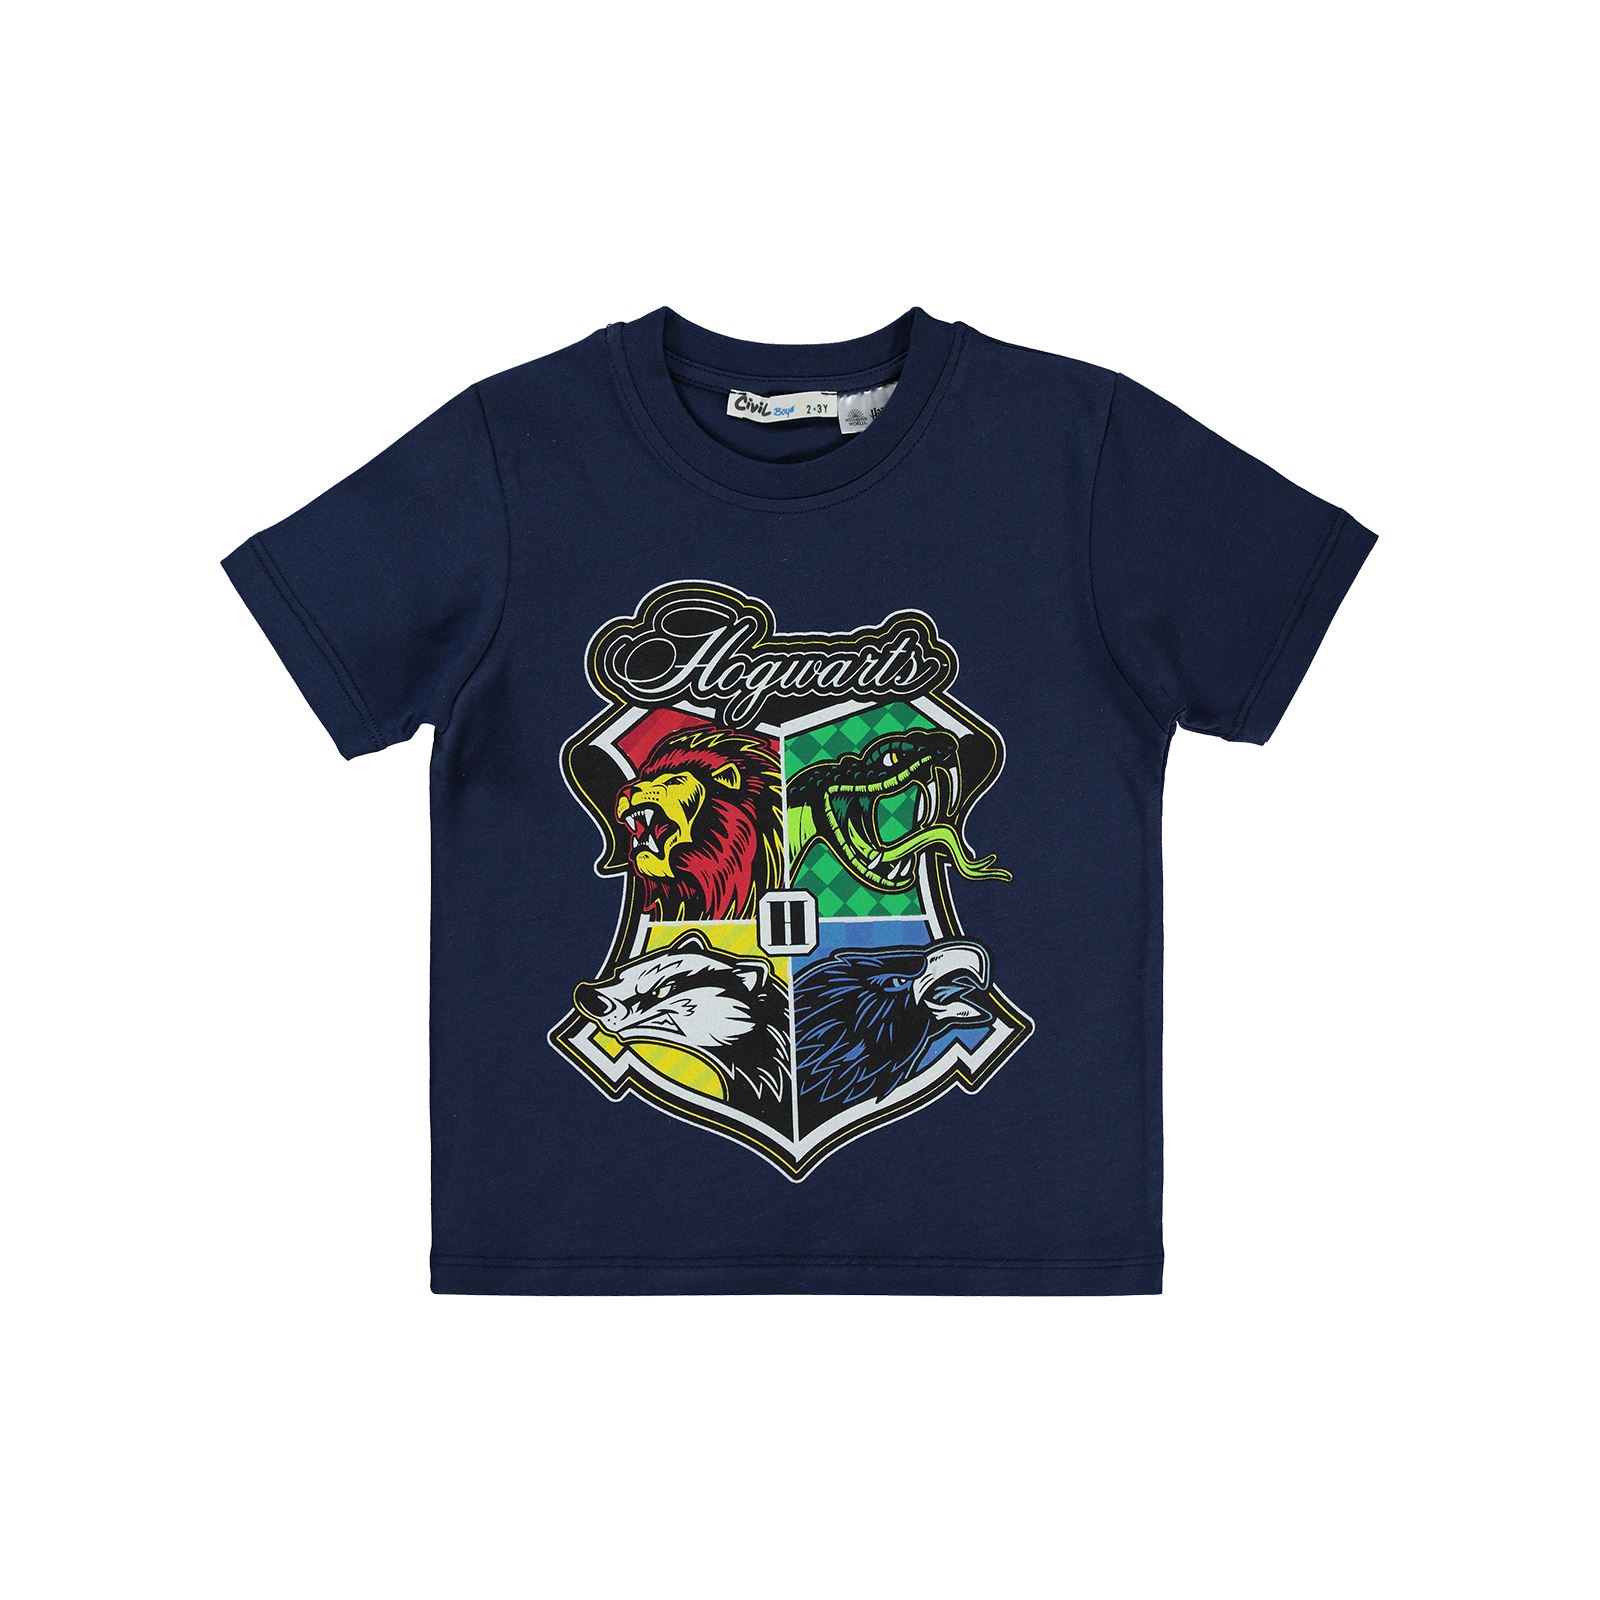 Harry Potter Erkek Çocuk Tişört 2-5 Yaş Lacivert